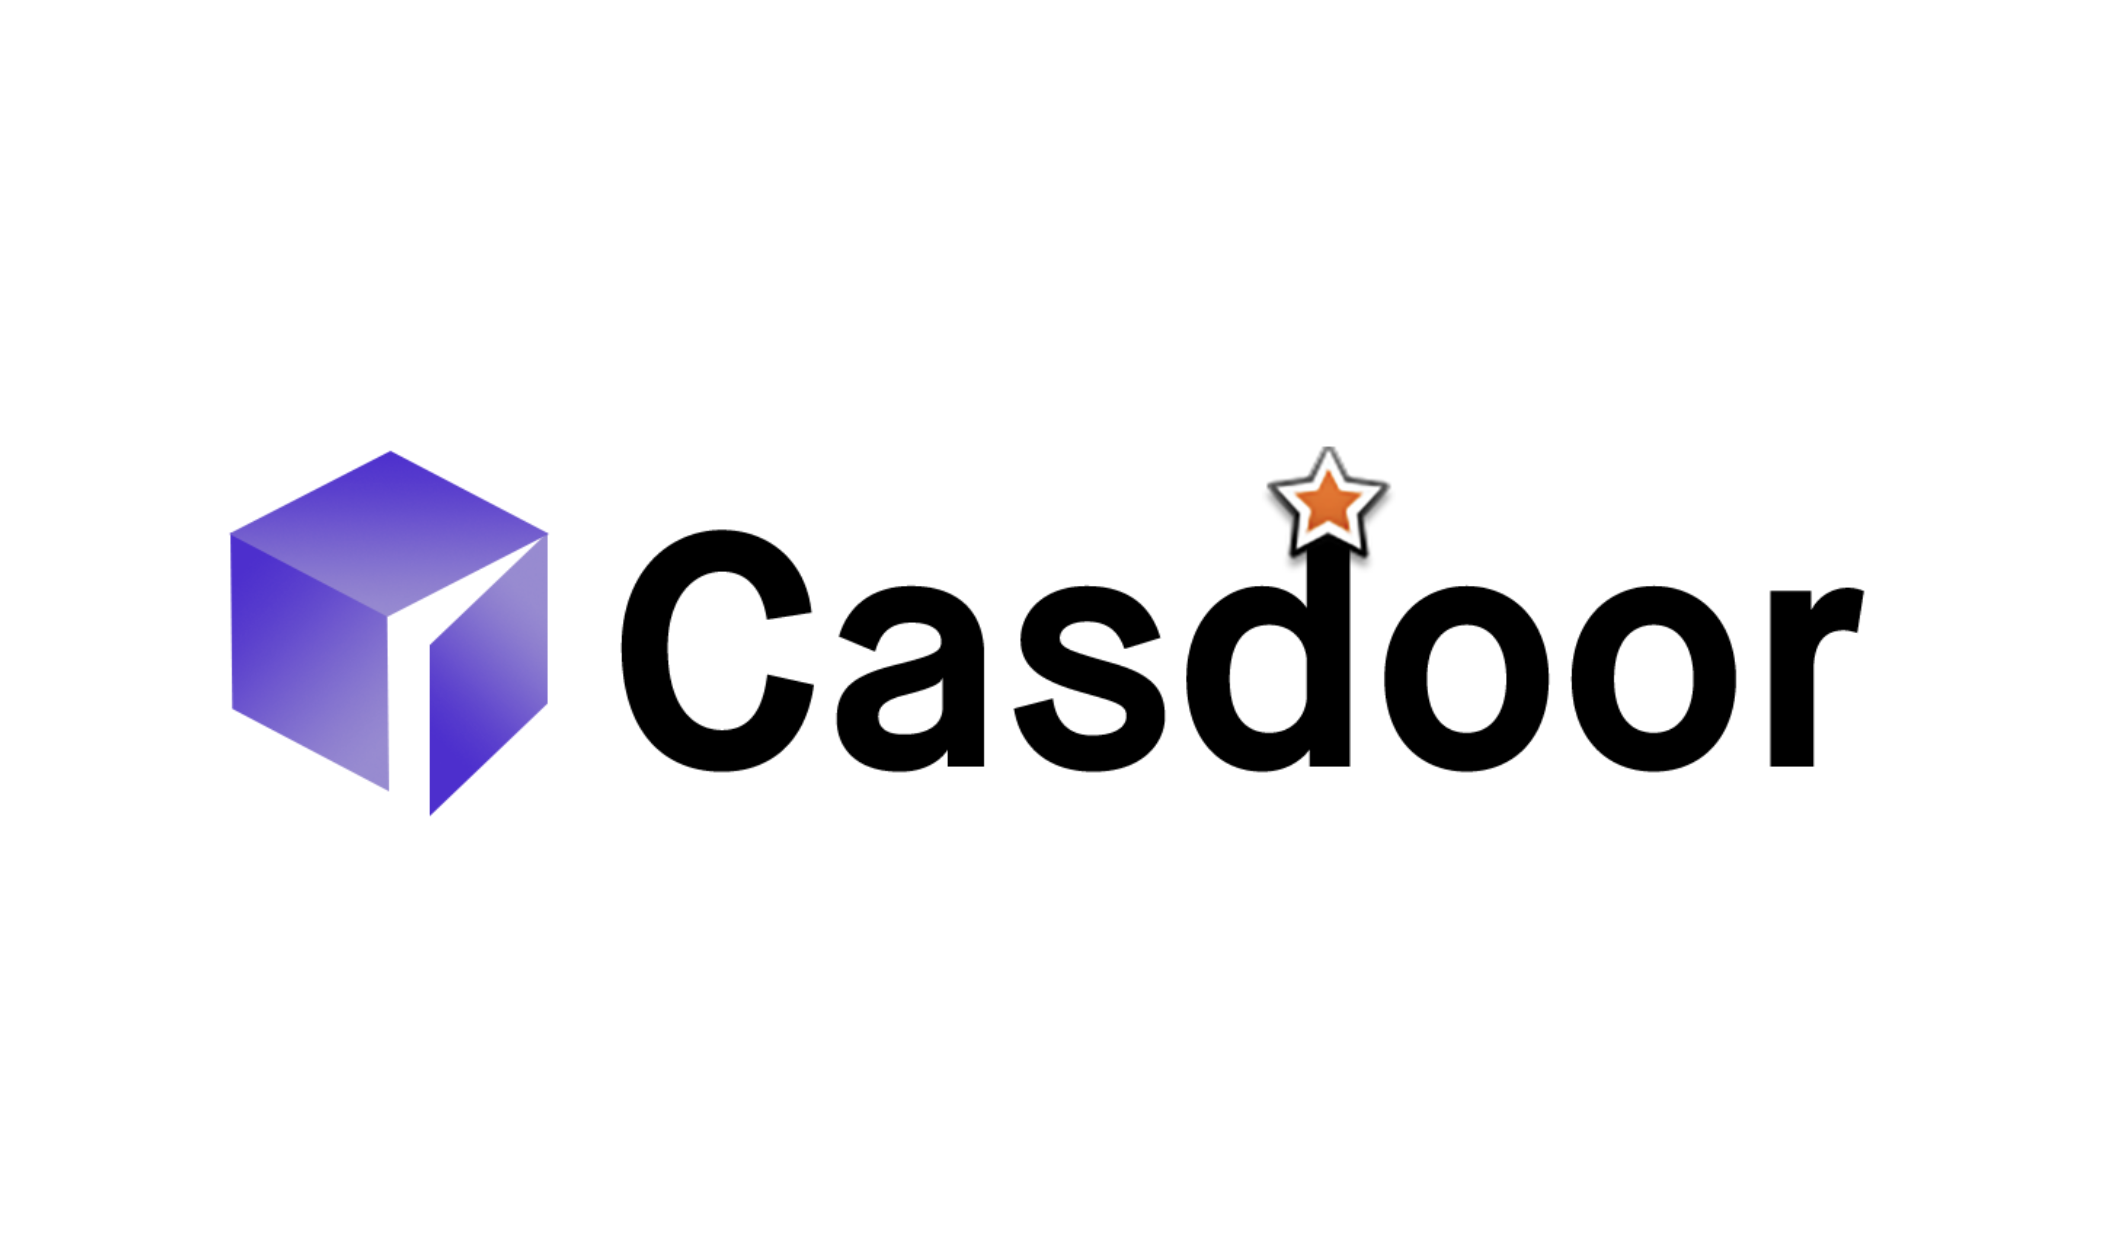 Découvrez la gestion des accès utilisateur dans le développement web avec Casdoor, une plateforme IAM open-source. Restez à l'écoute pour apprendre à configurer Casdoor avec Docker et à construire une application de démonstration React sécurisée dans la prochaine partie de cette série.